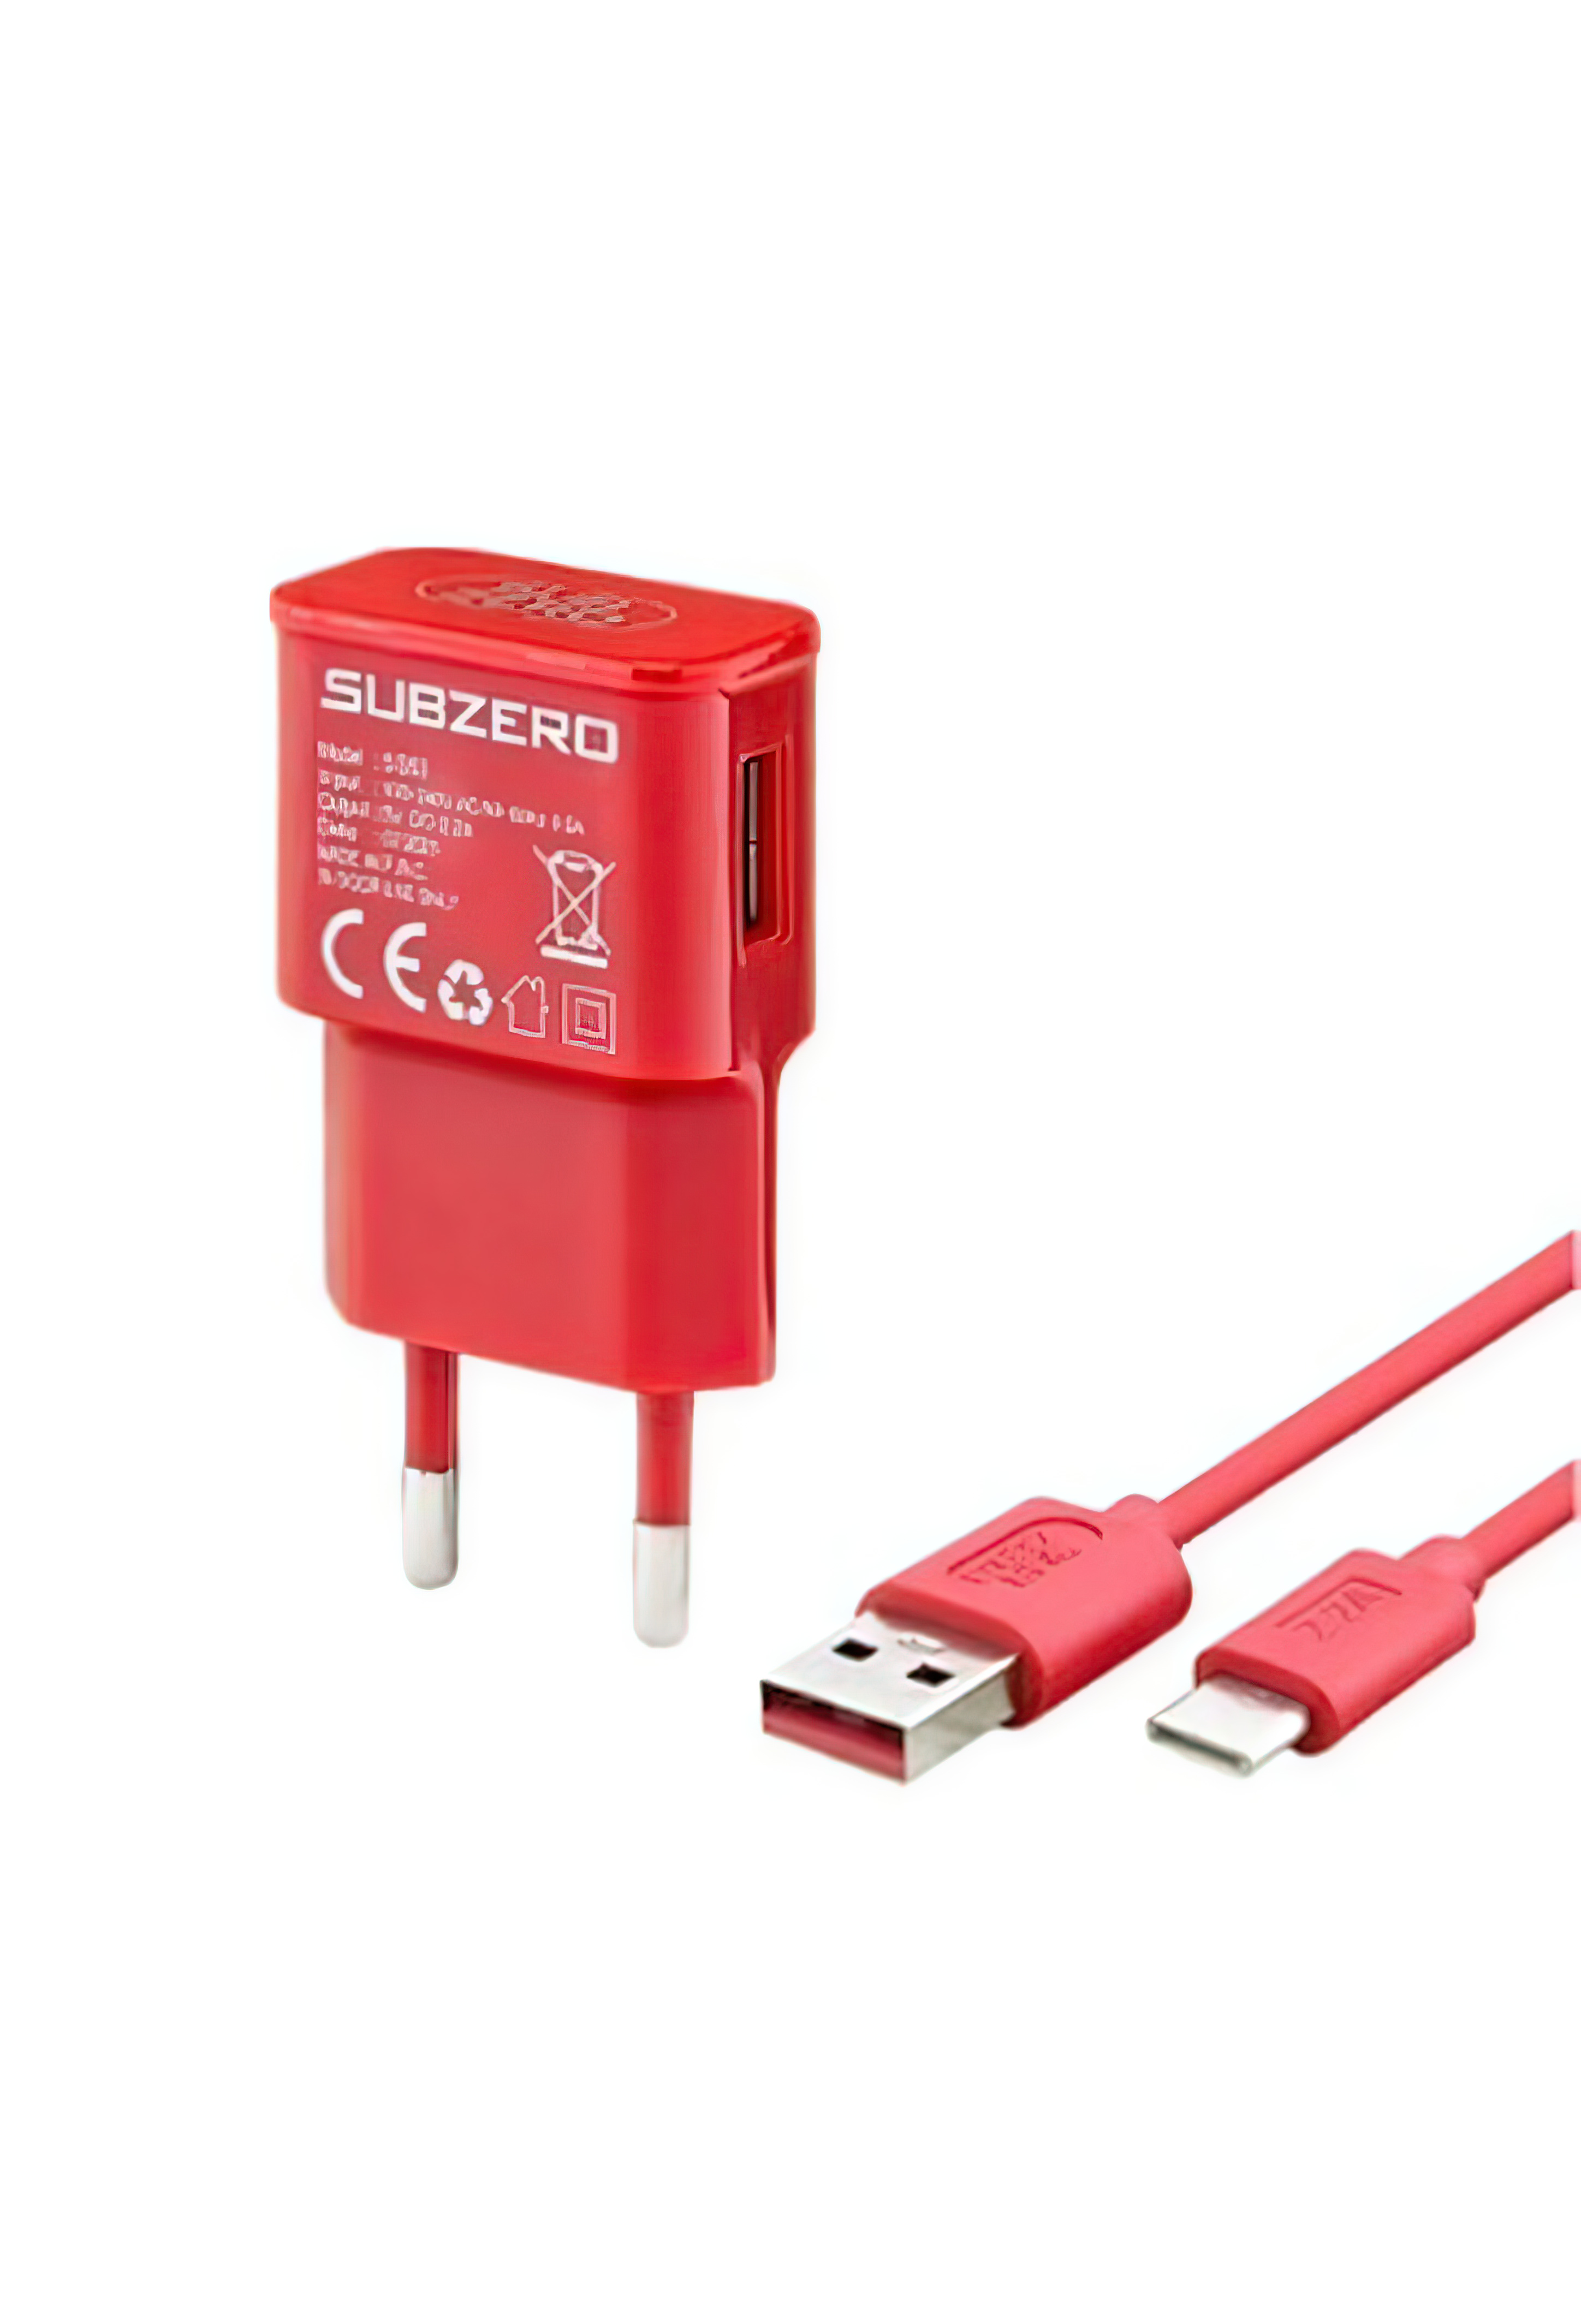 Subzero 2.0A Destekli Şarj Adaptörü Seti - Kırmızı